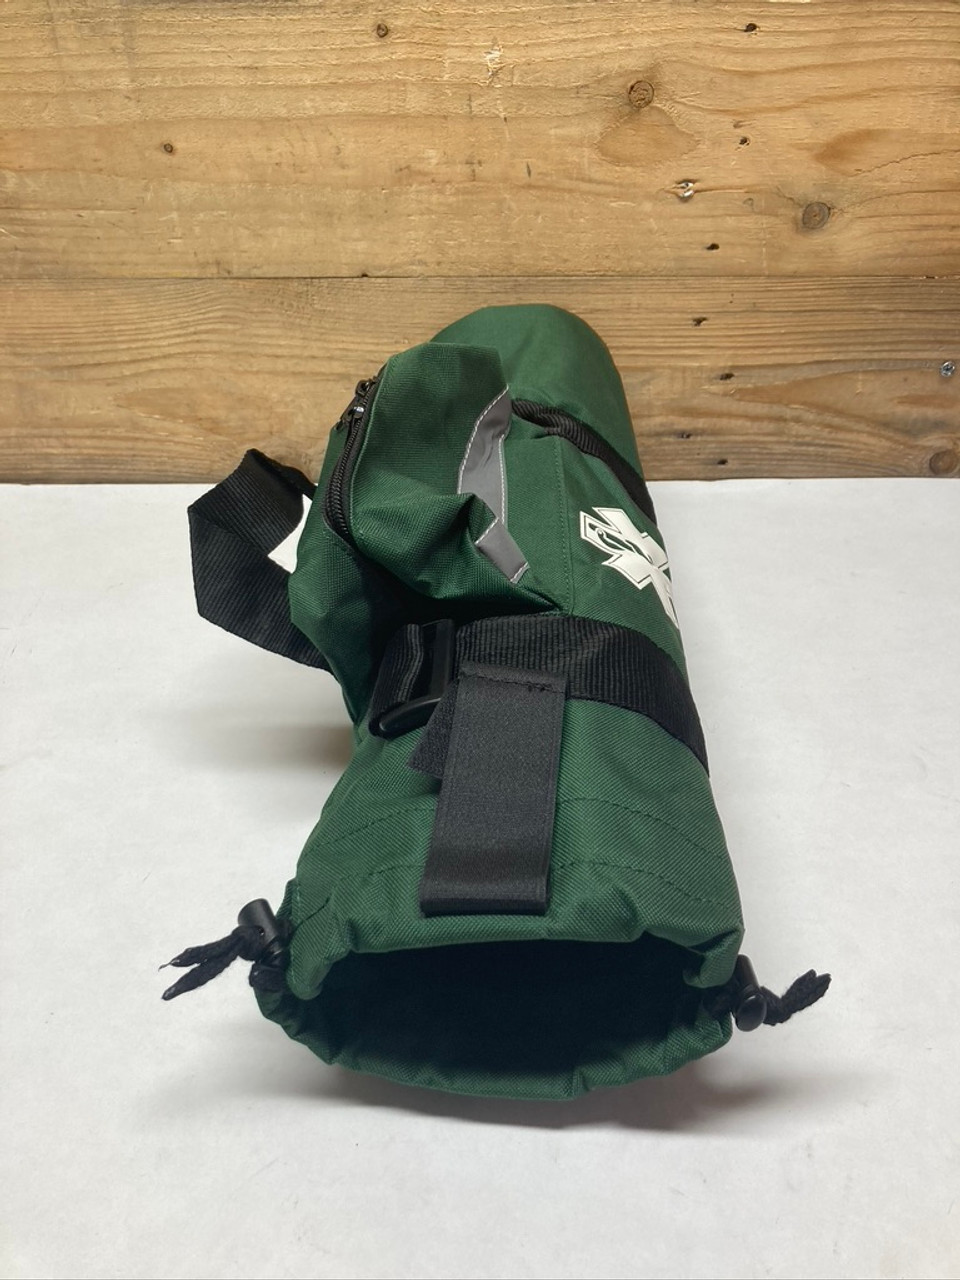 Oxygen Concentrator Backpack a Handmade Designer Carrier | Etsy Ireland | Oxygen  bags, Backpacks, Oxygen tank backpacks